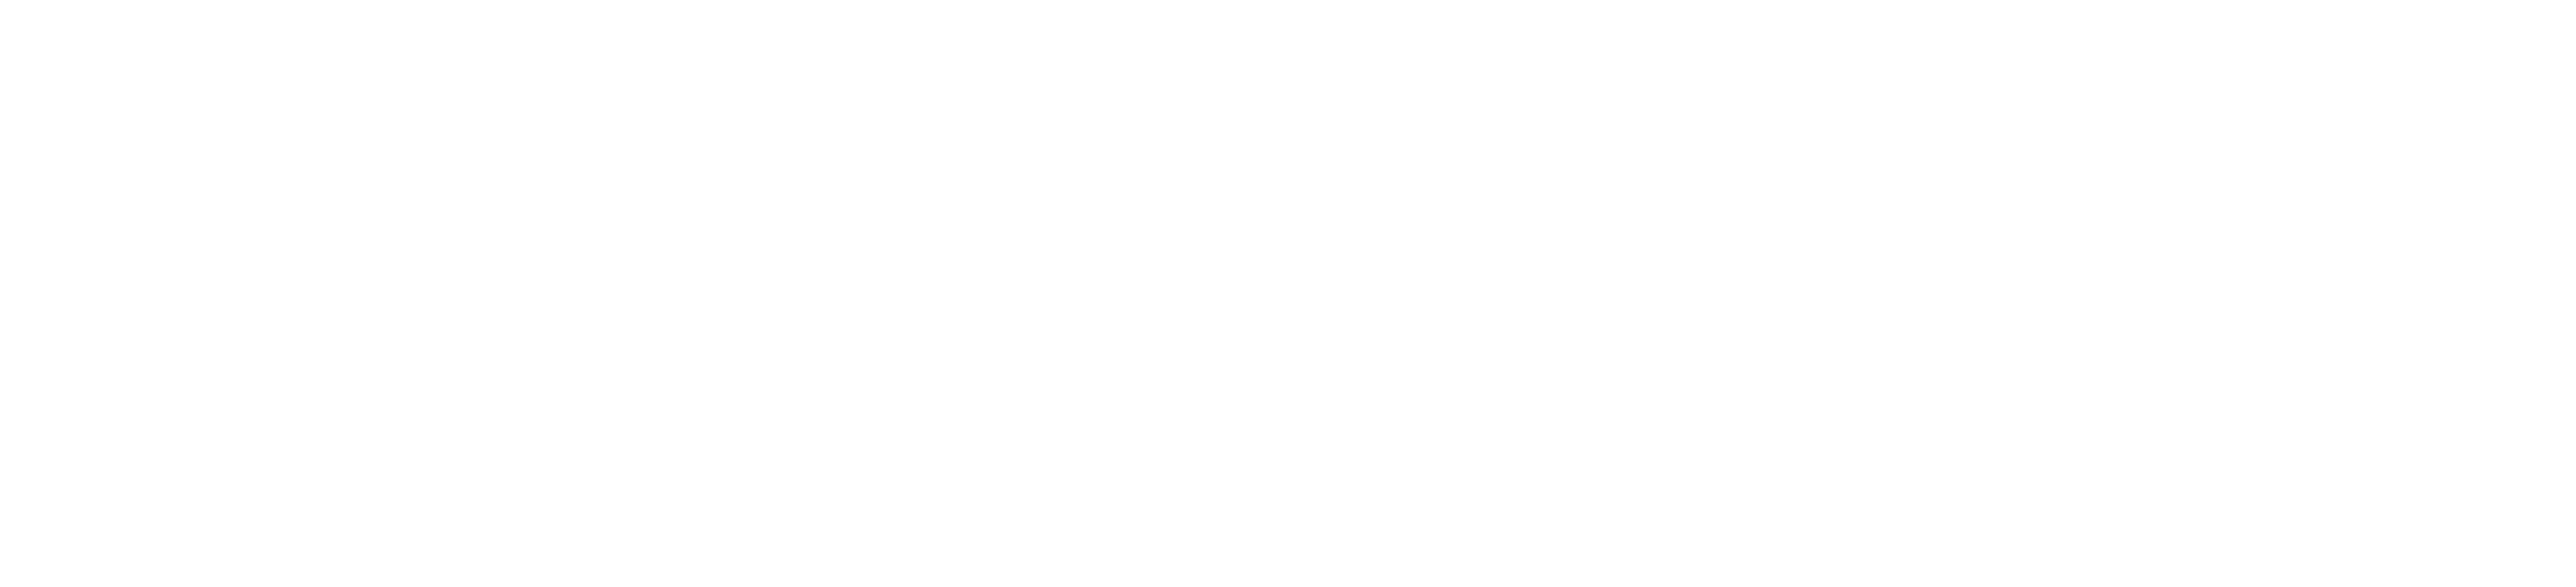 Algolia-logo-white